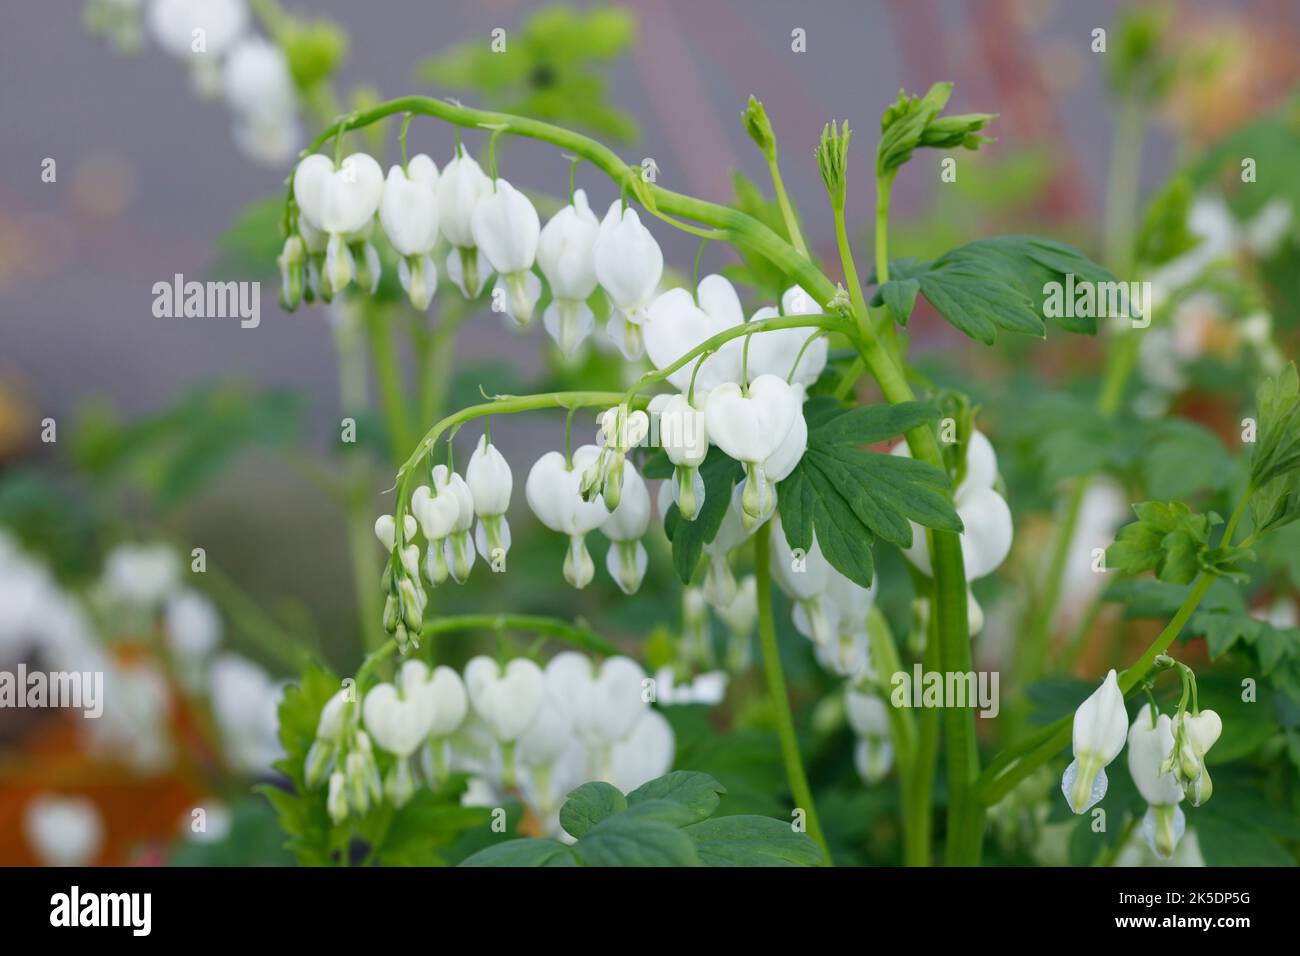 Lamprocapnos spectabilis 'Alba'. Corazón sangrante florece en un jardín inglés. Foto de stock